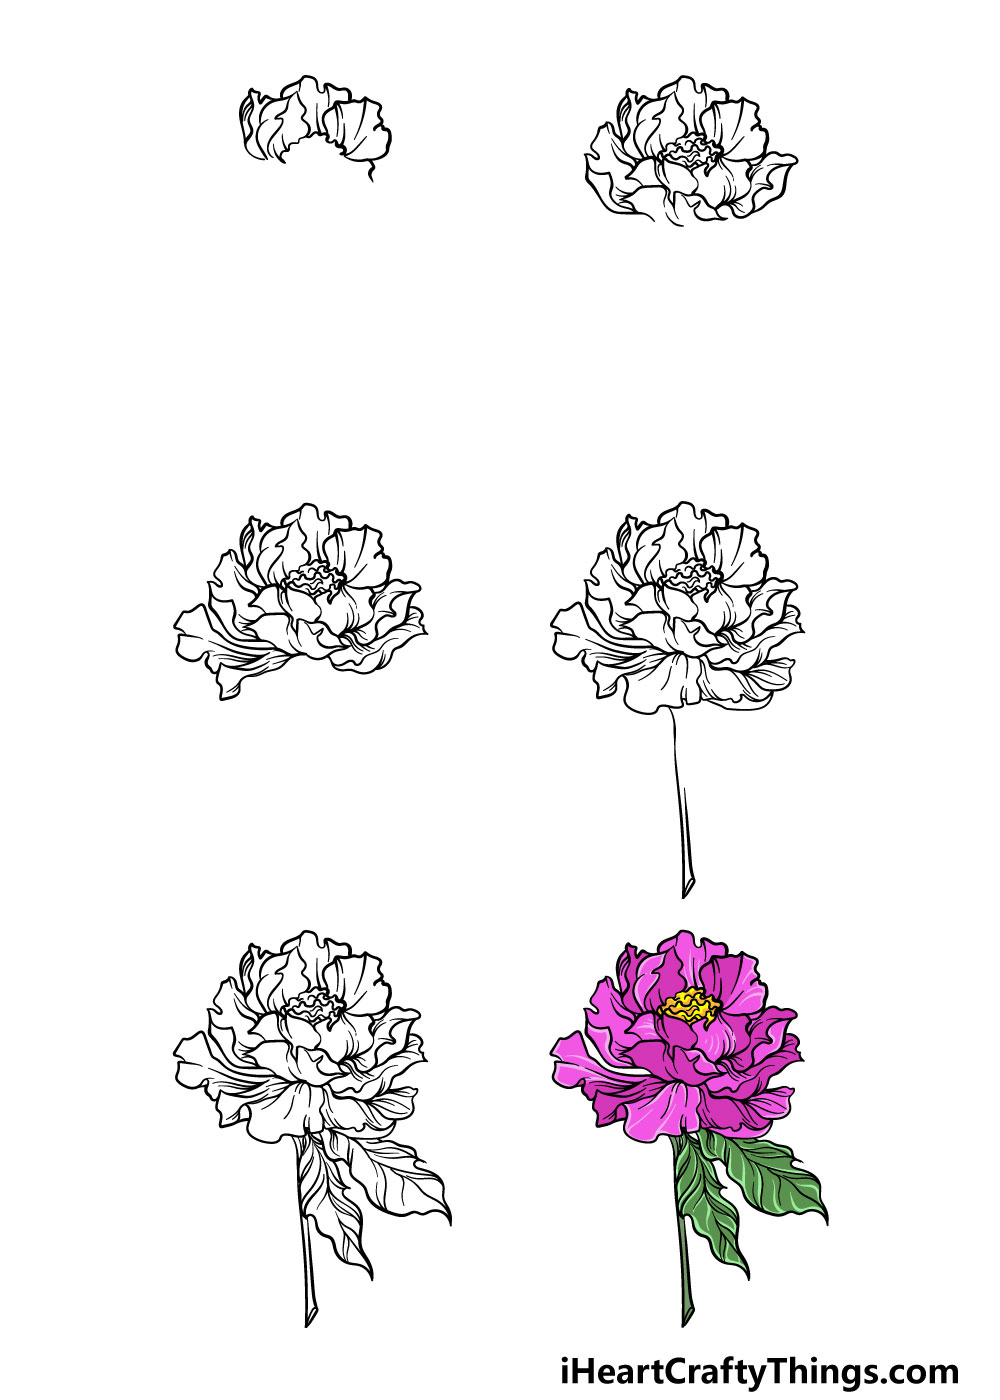 Tổng hợp 14 cách vẽ hoa hồng đơn giản nhất hiện nay